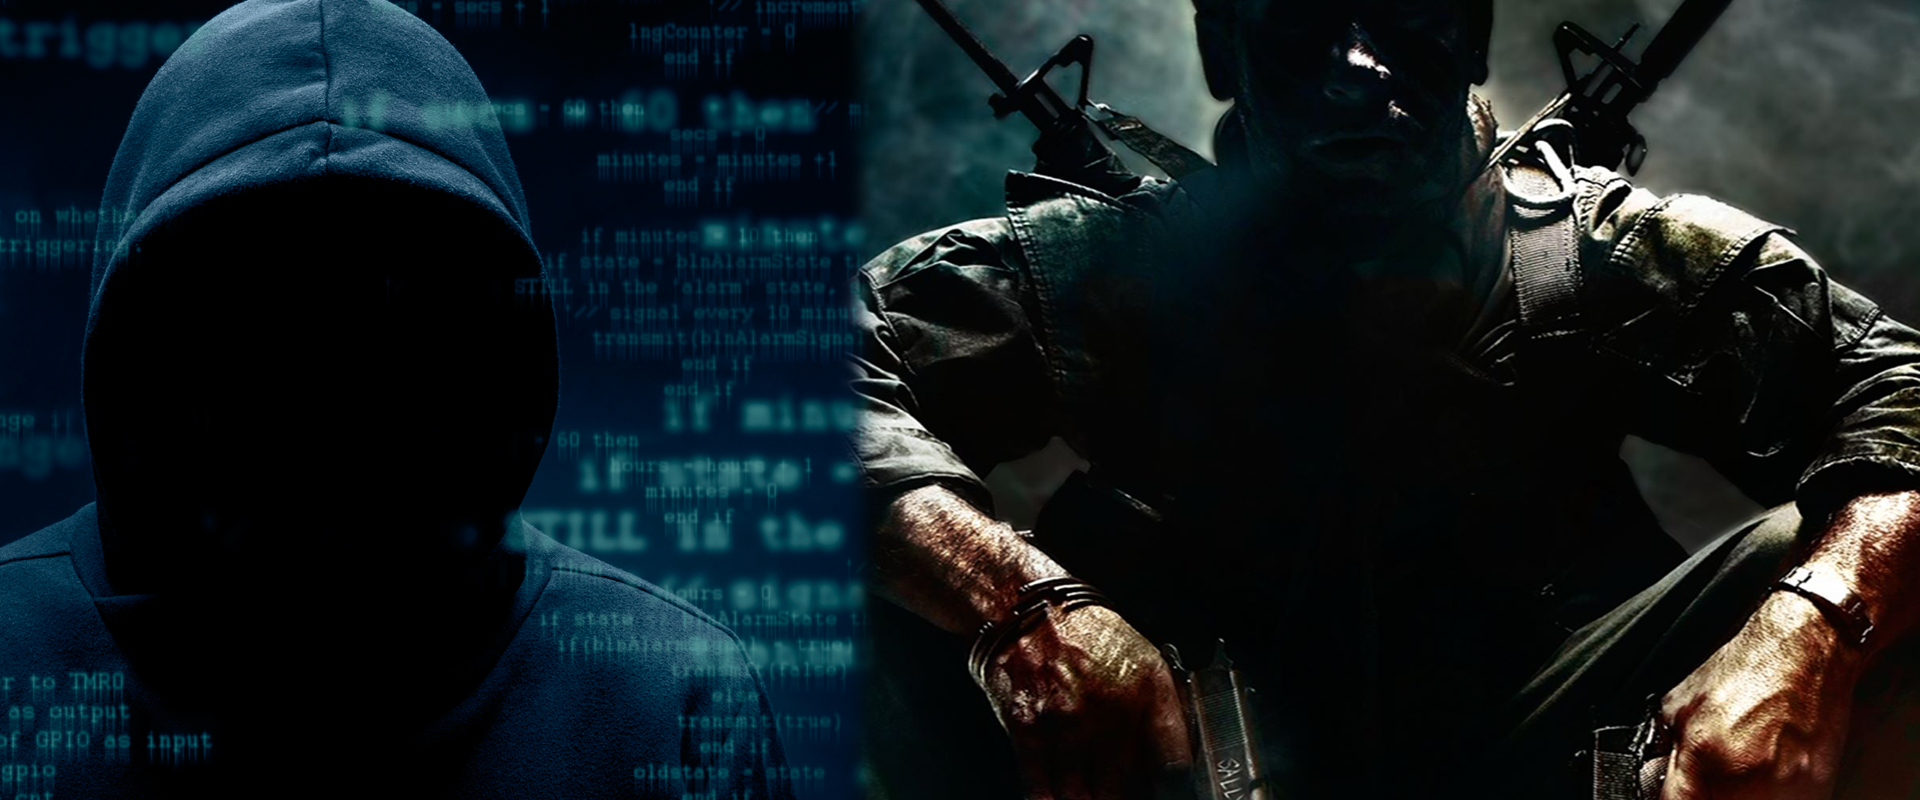 3.3 millió dollár értékű kriptovaluta lopásra kényszerítettek hackerek két Call of Duty játékost